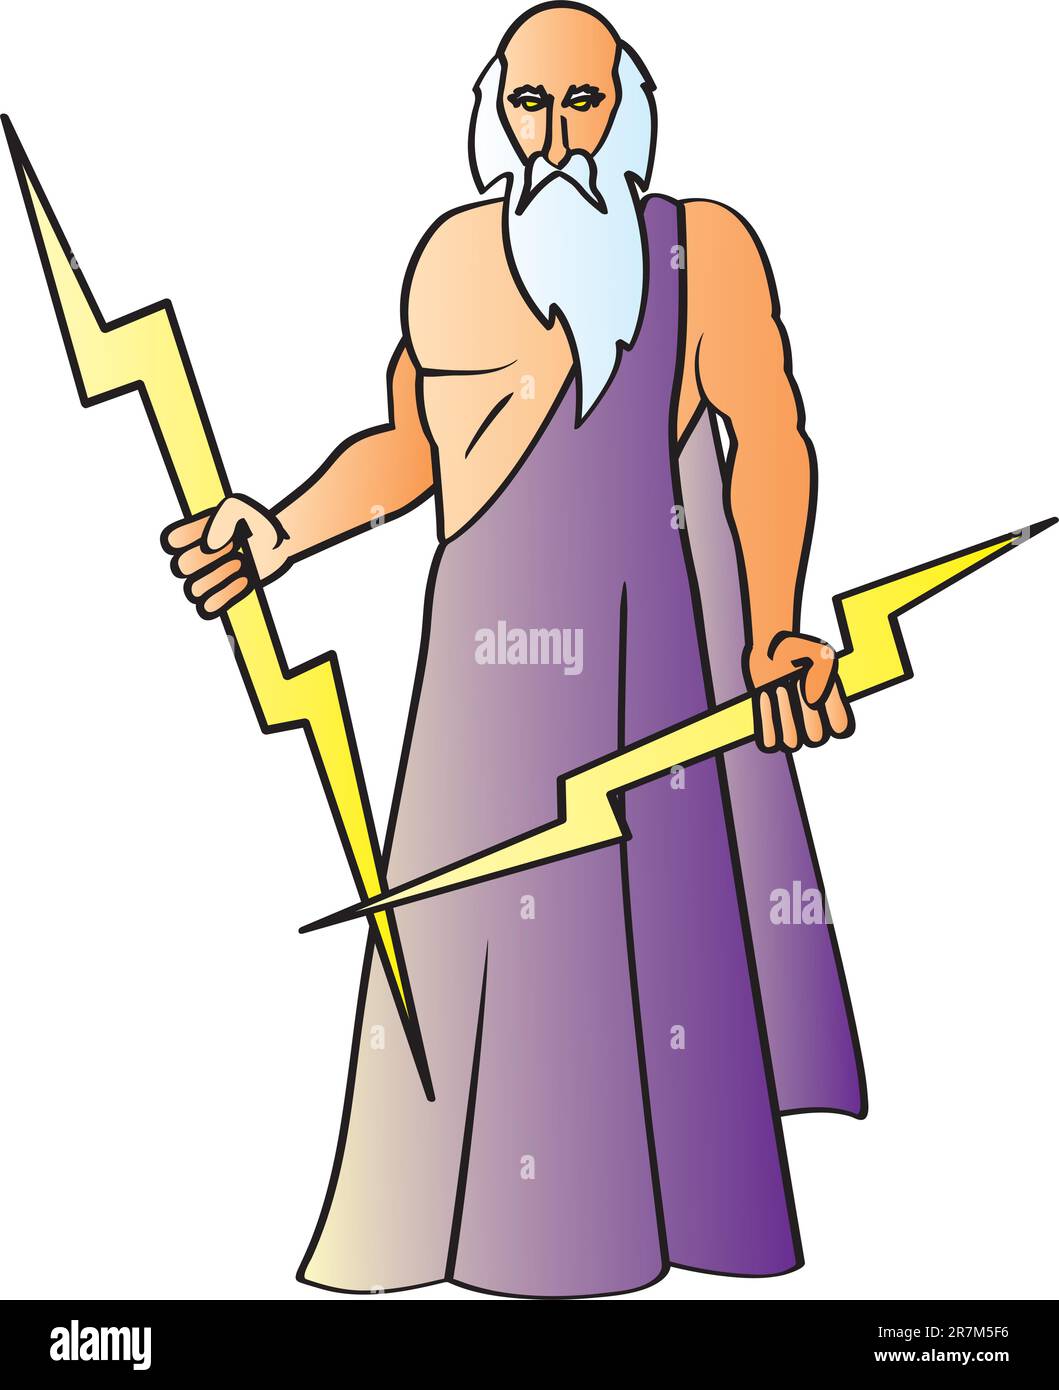 Eine Zeichentrickzeichnung des griechischen Gottes Zeus, auch bekannt als römischer gott Jupiter, mit seinen charakteristischen Blitzen. Stock Vektor